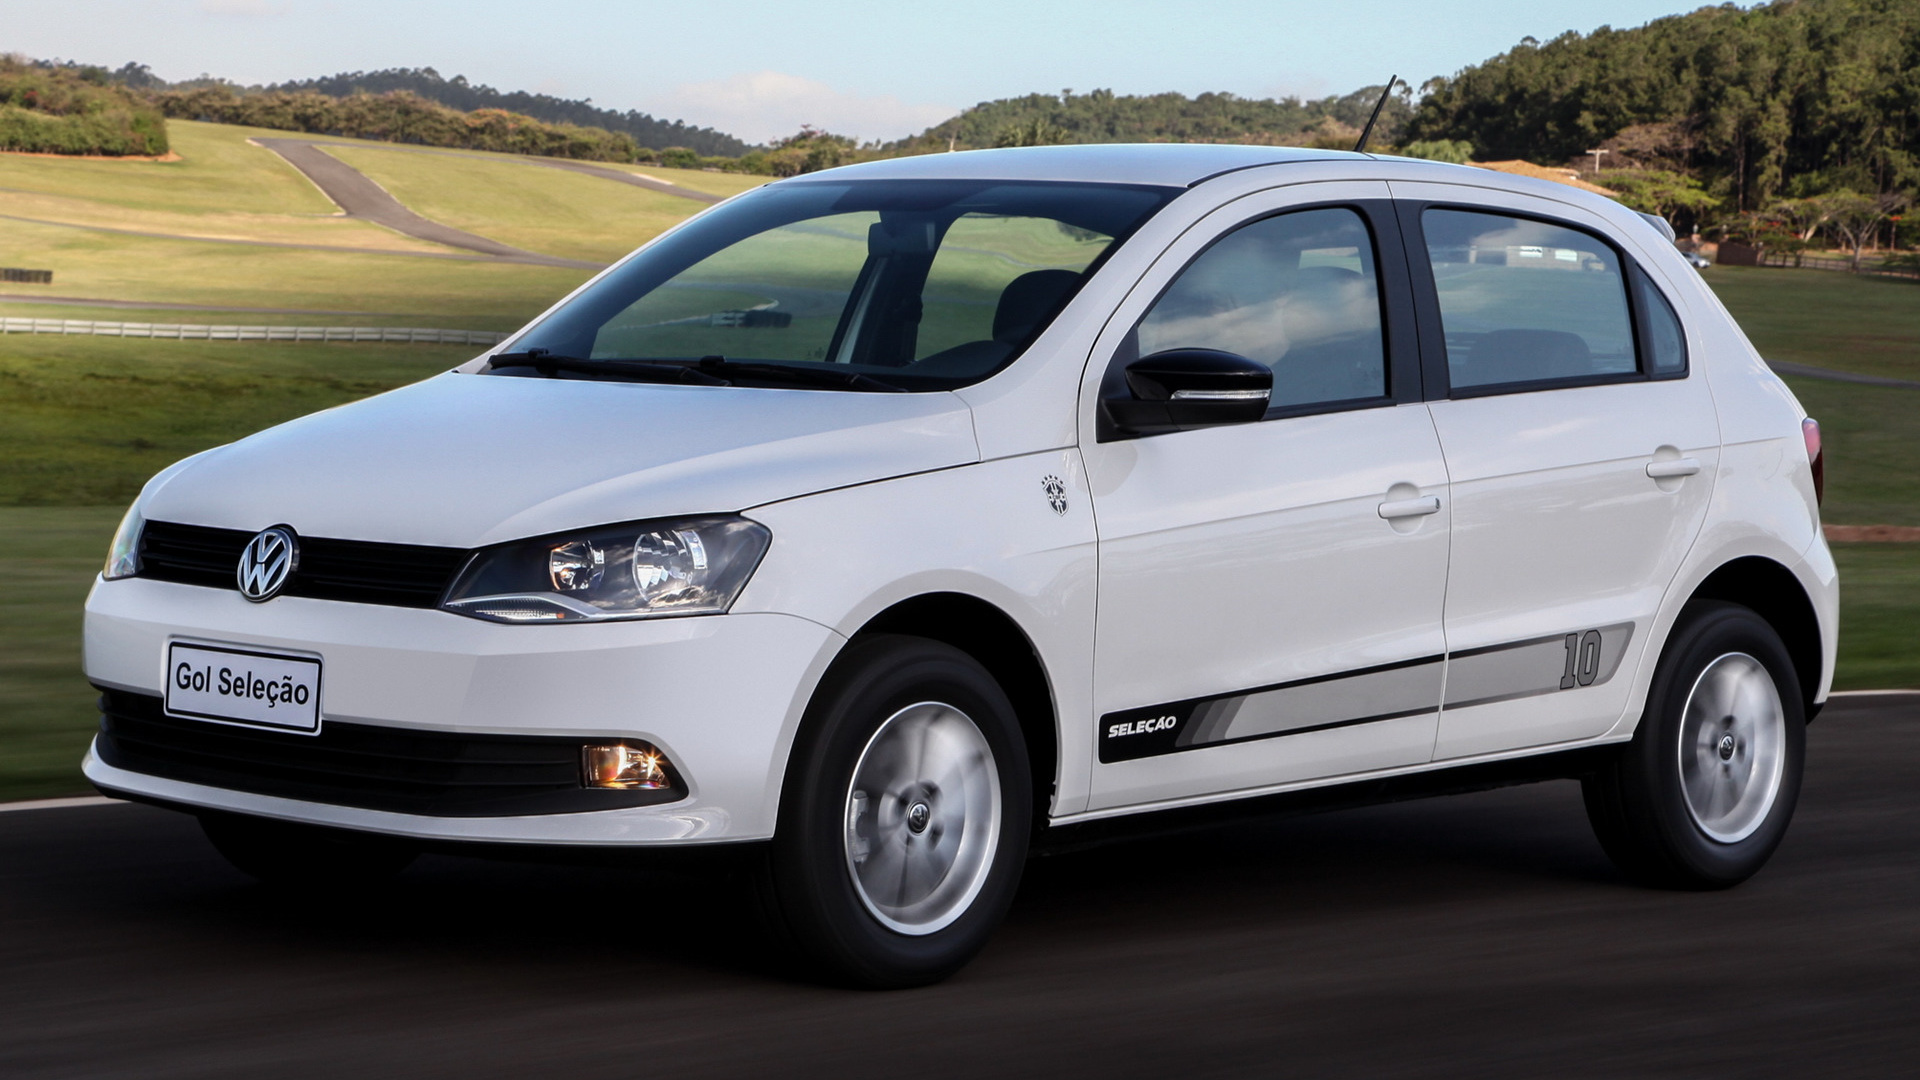 2013 Volkswagen Gol Selecao 5-door - Wallpapers and HD Images | Car Pixel